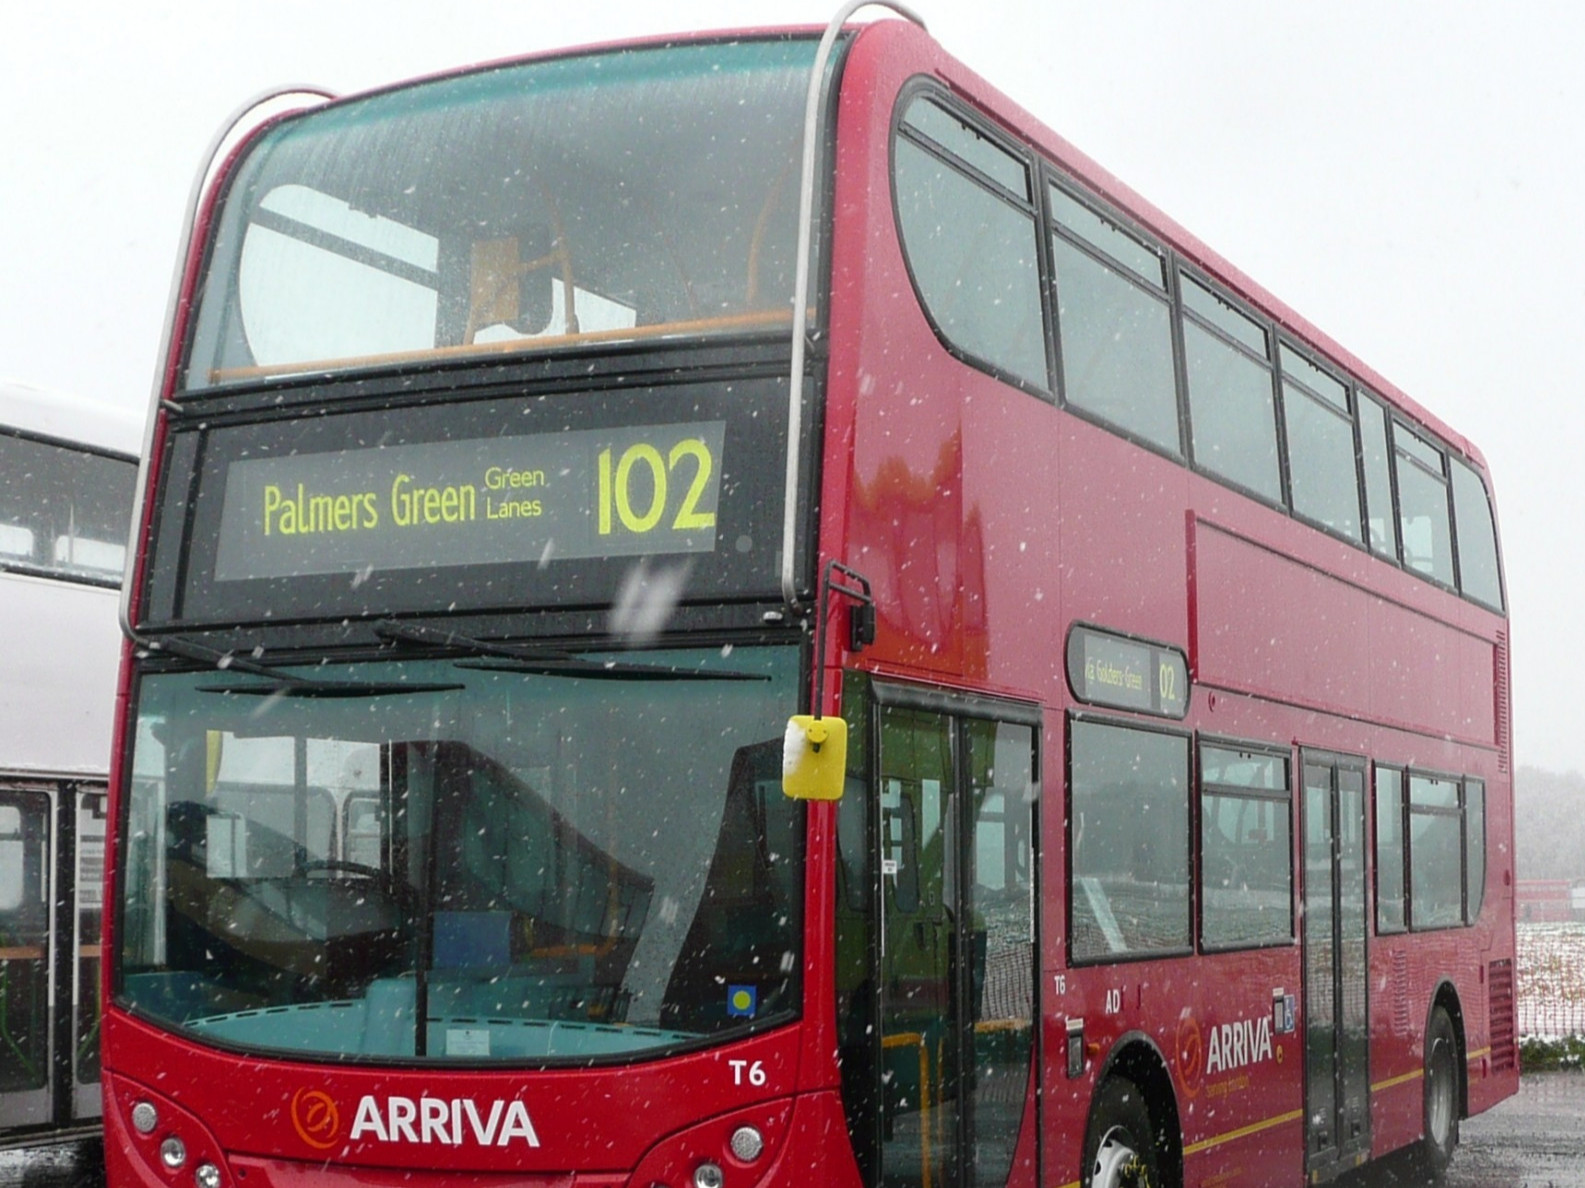 2020 оноос давхар автобус нийтийн тээврийн үйлчилгээнд явна 